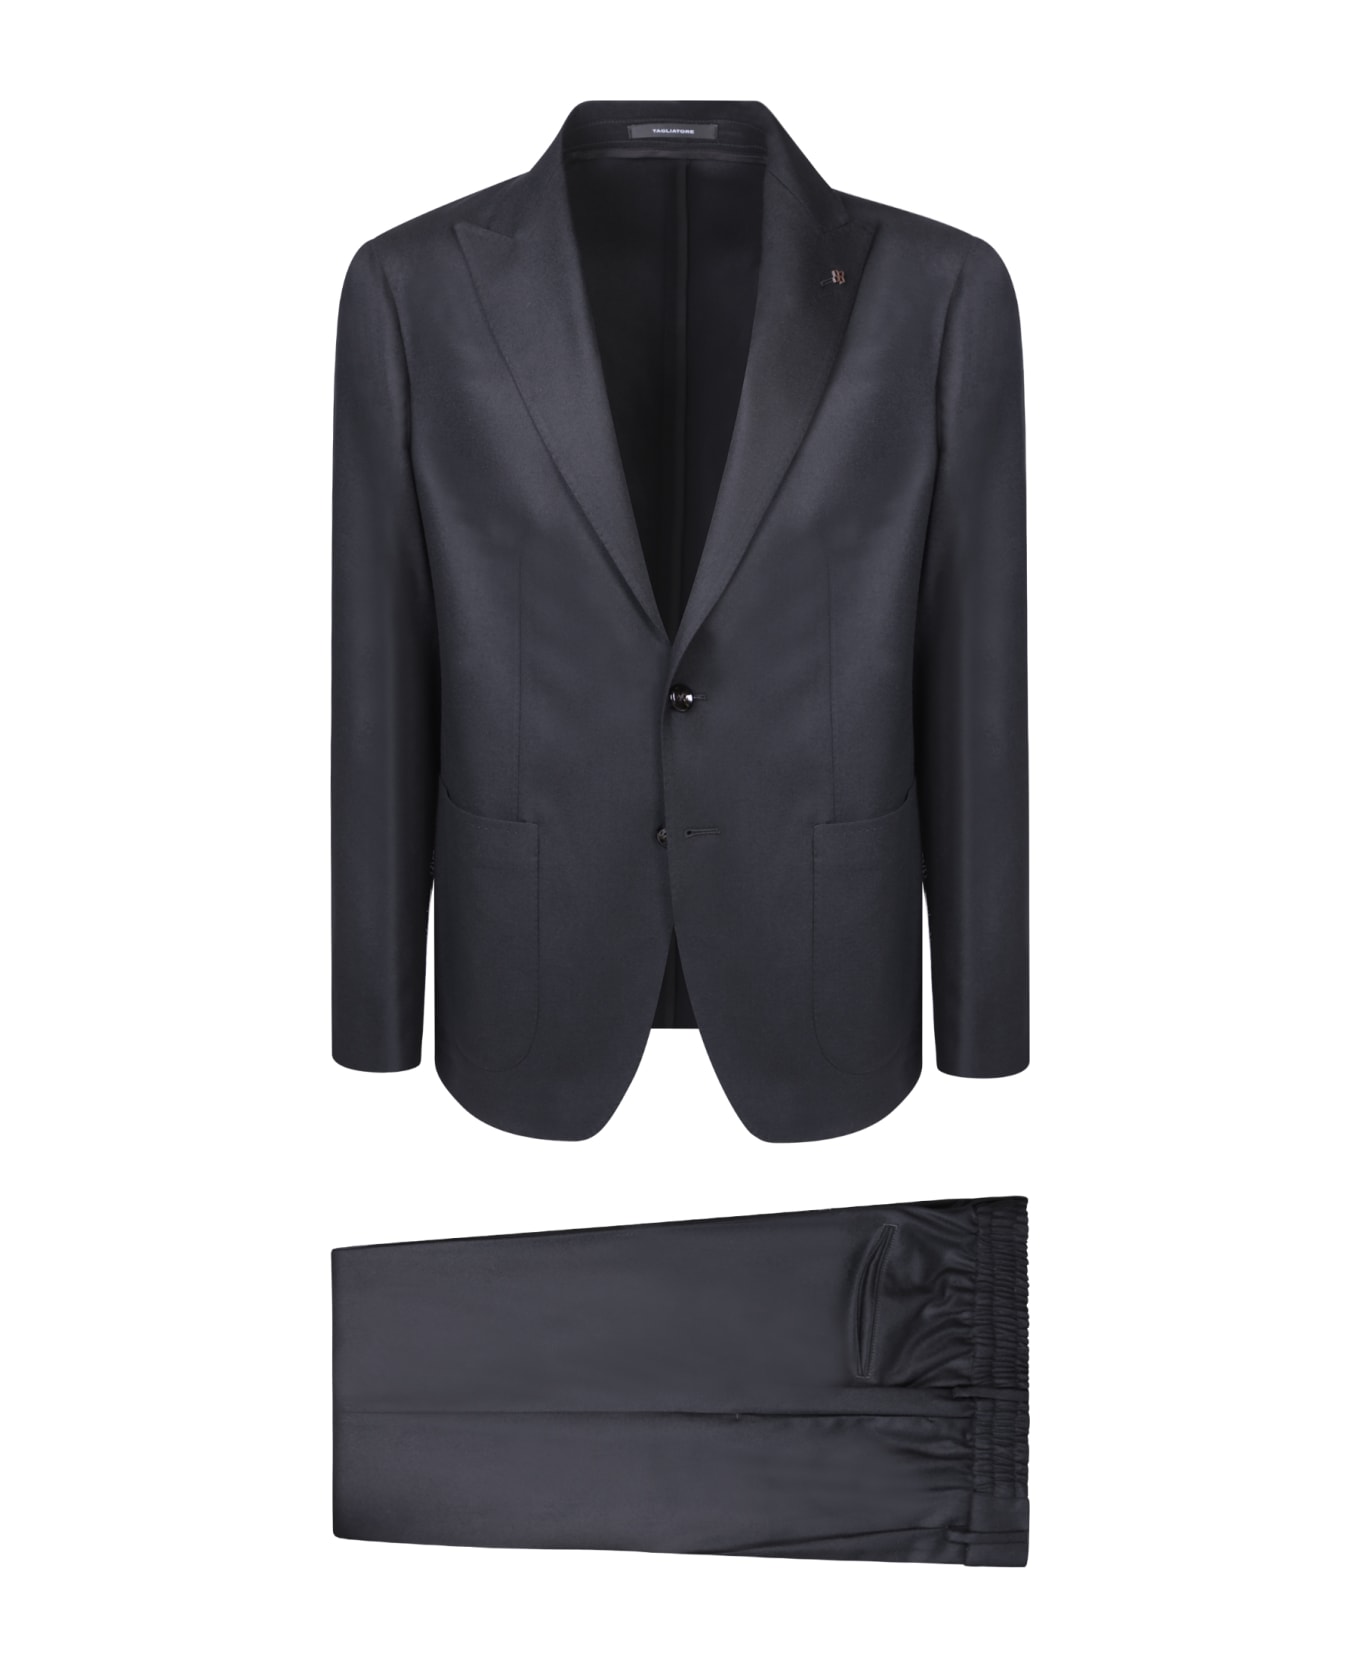 Tagliatore Single-breasted Jacket Black Suit - Black